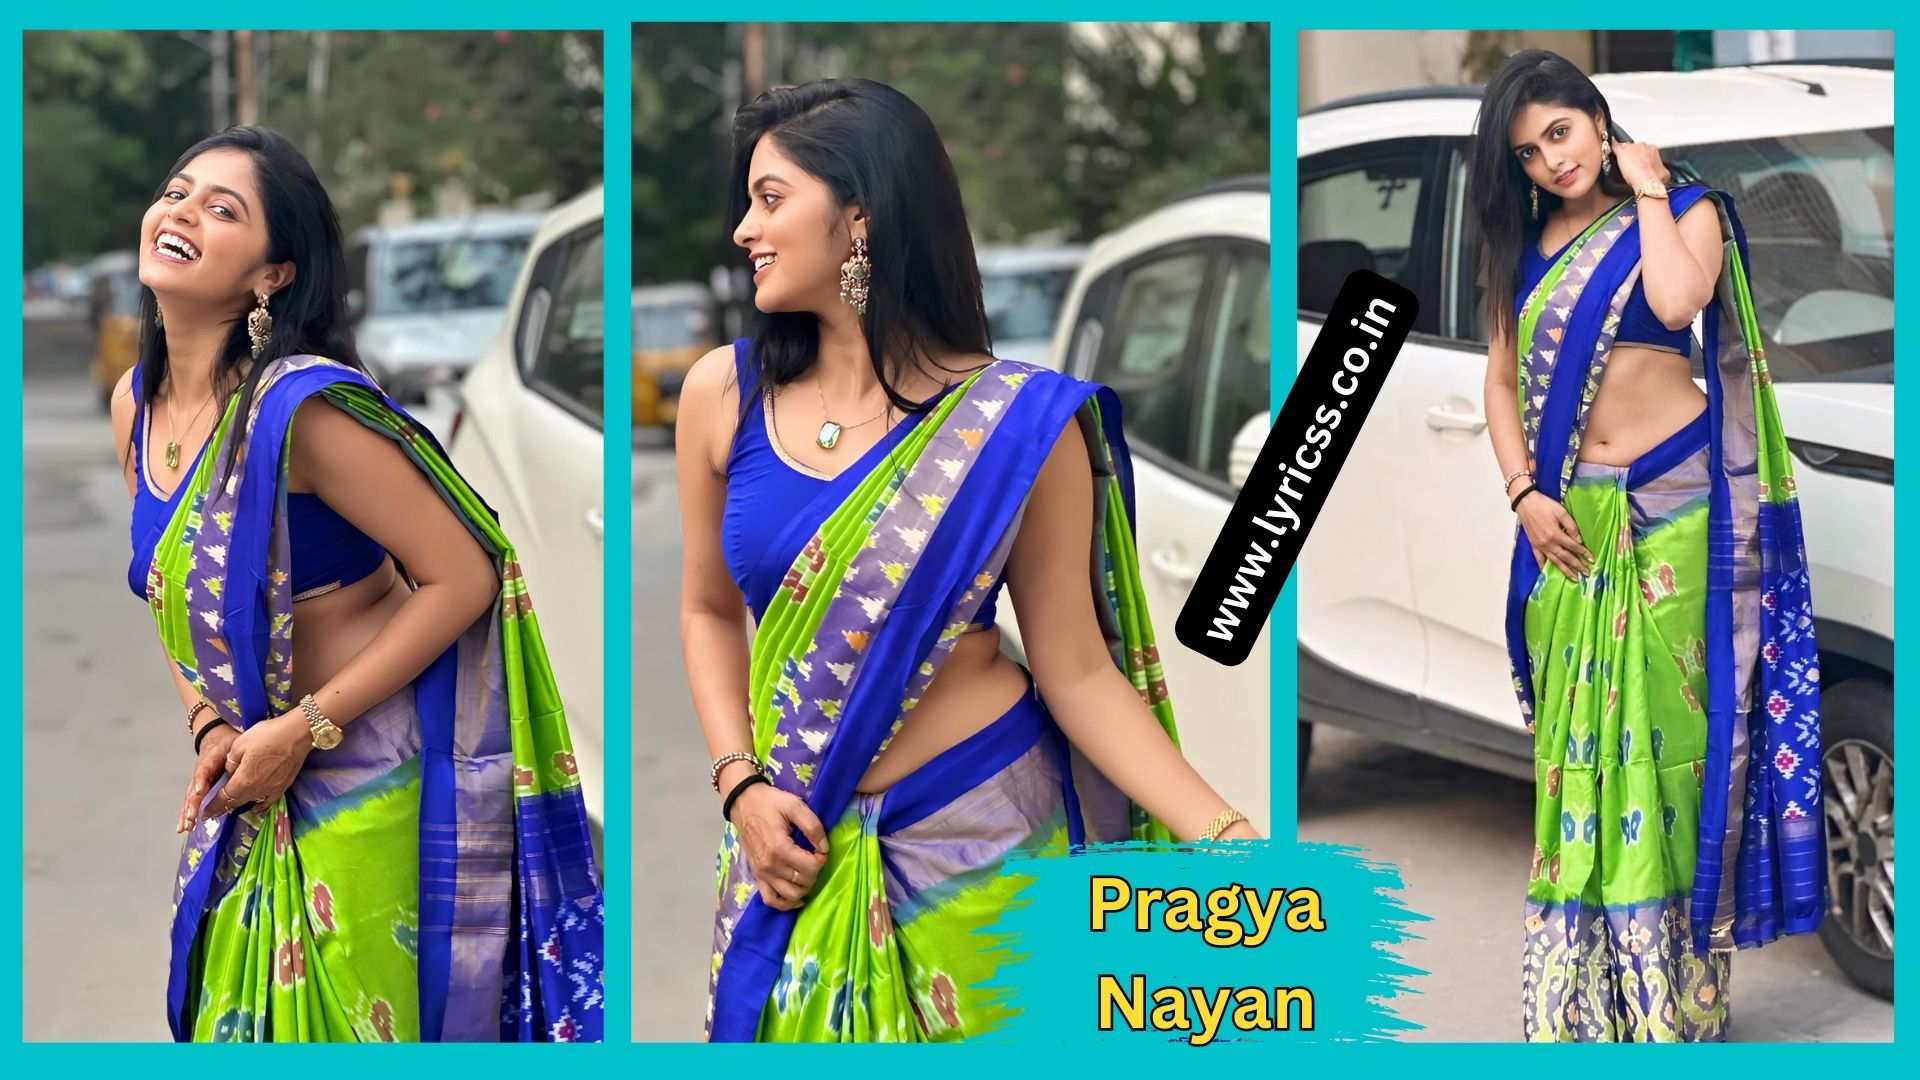 Pragya Nayan